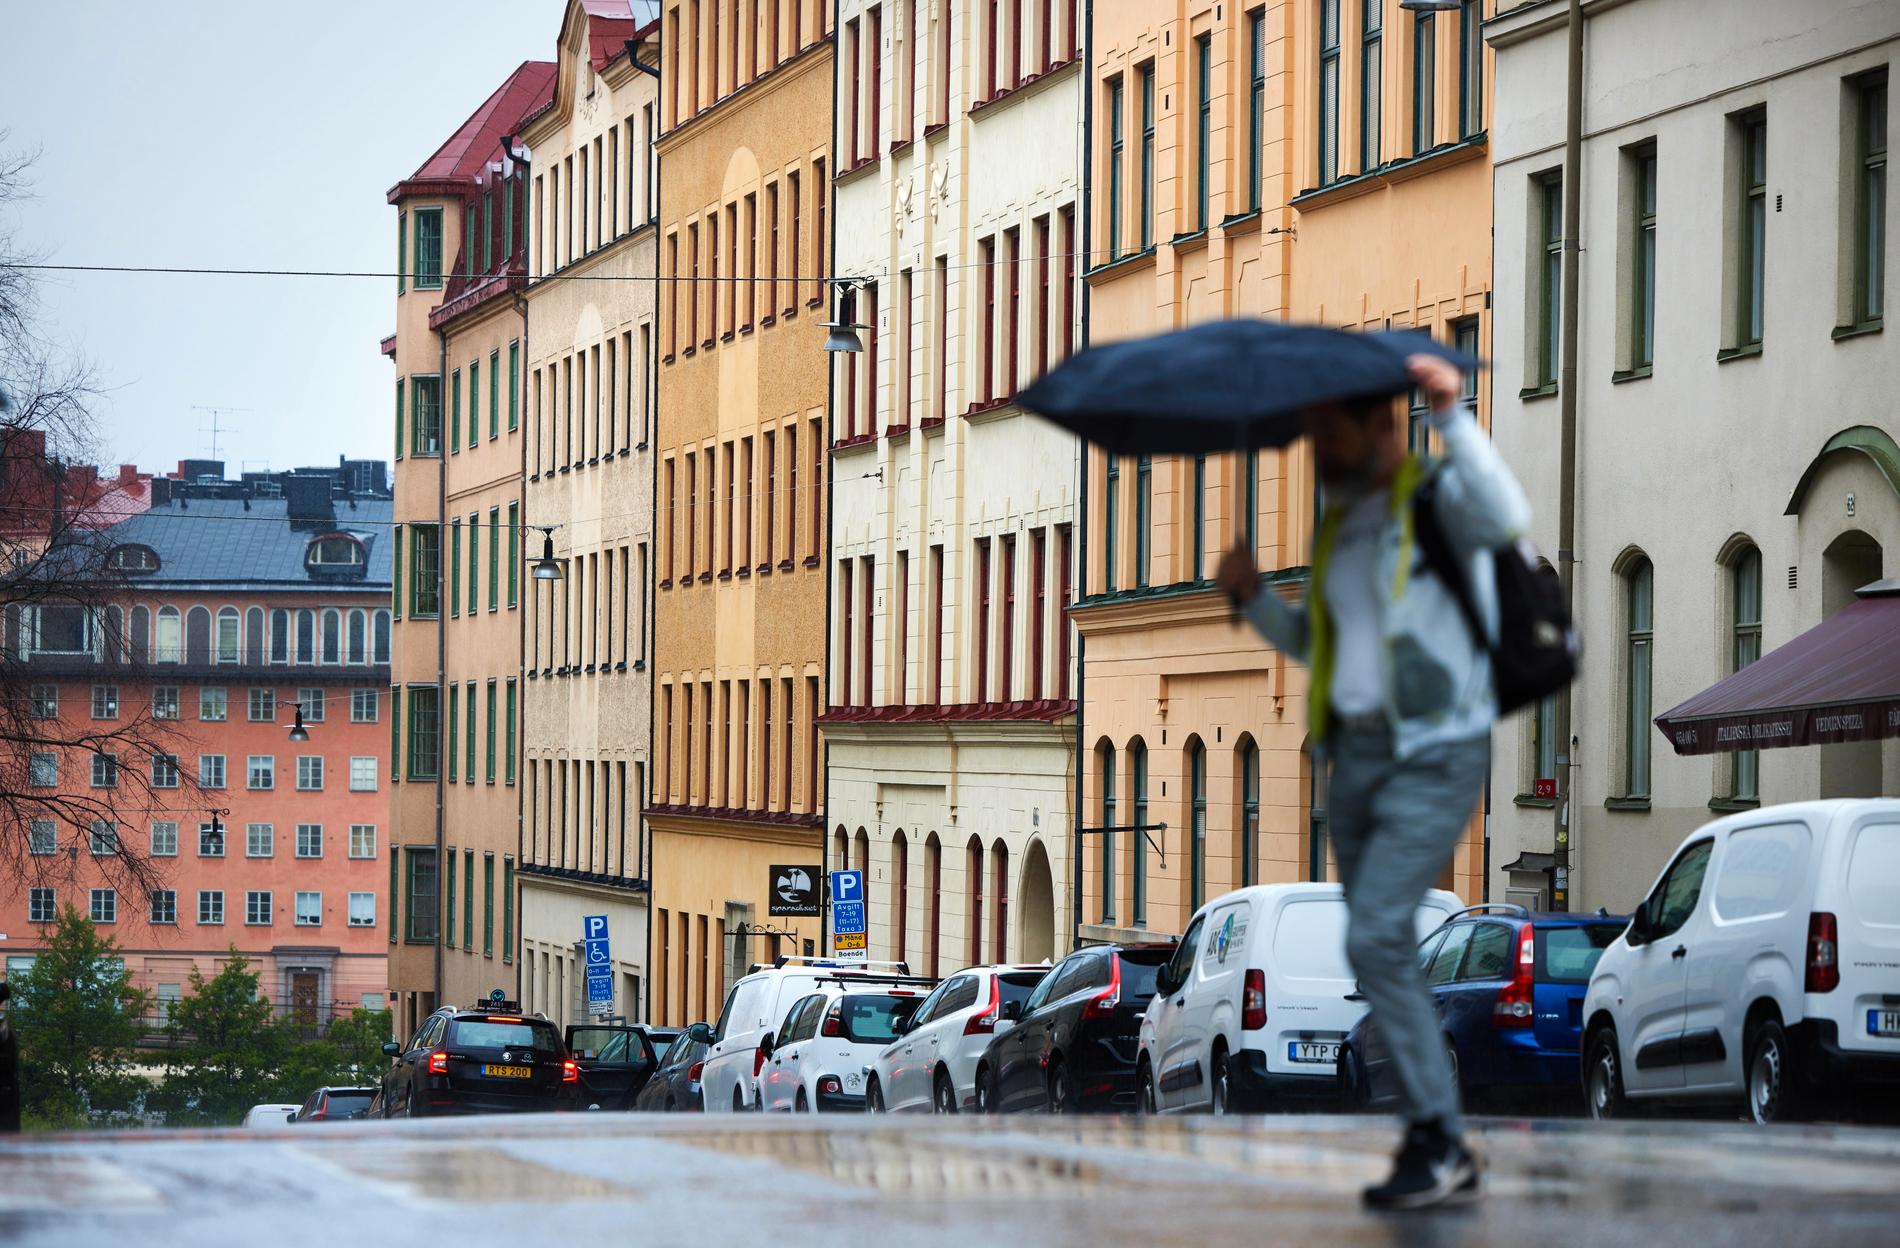 Mörka moln över bostadsmarknaden. Bopriserna faller , bland annat här på Kungsholmen i centrala Stockholm.